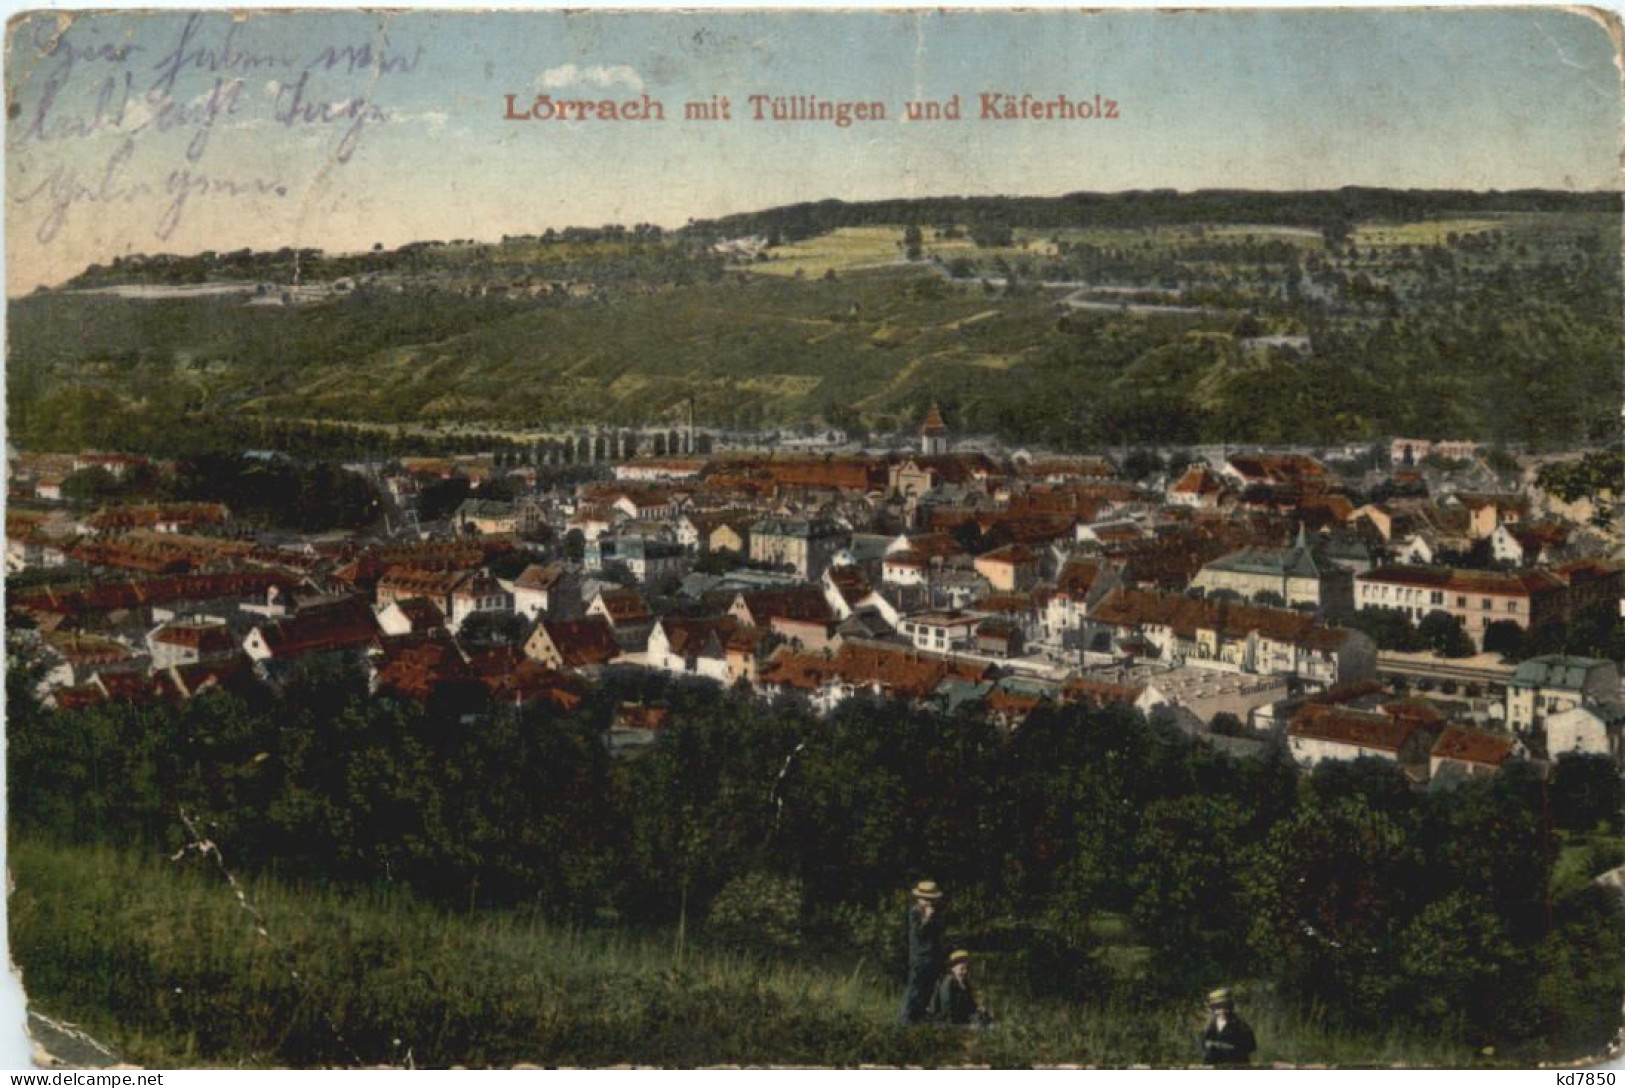 Lörrach - Loerrach